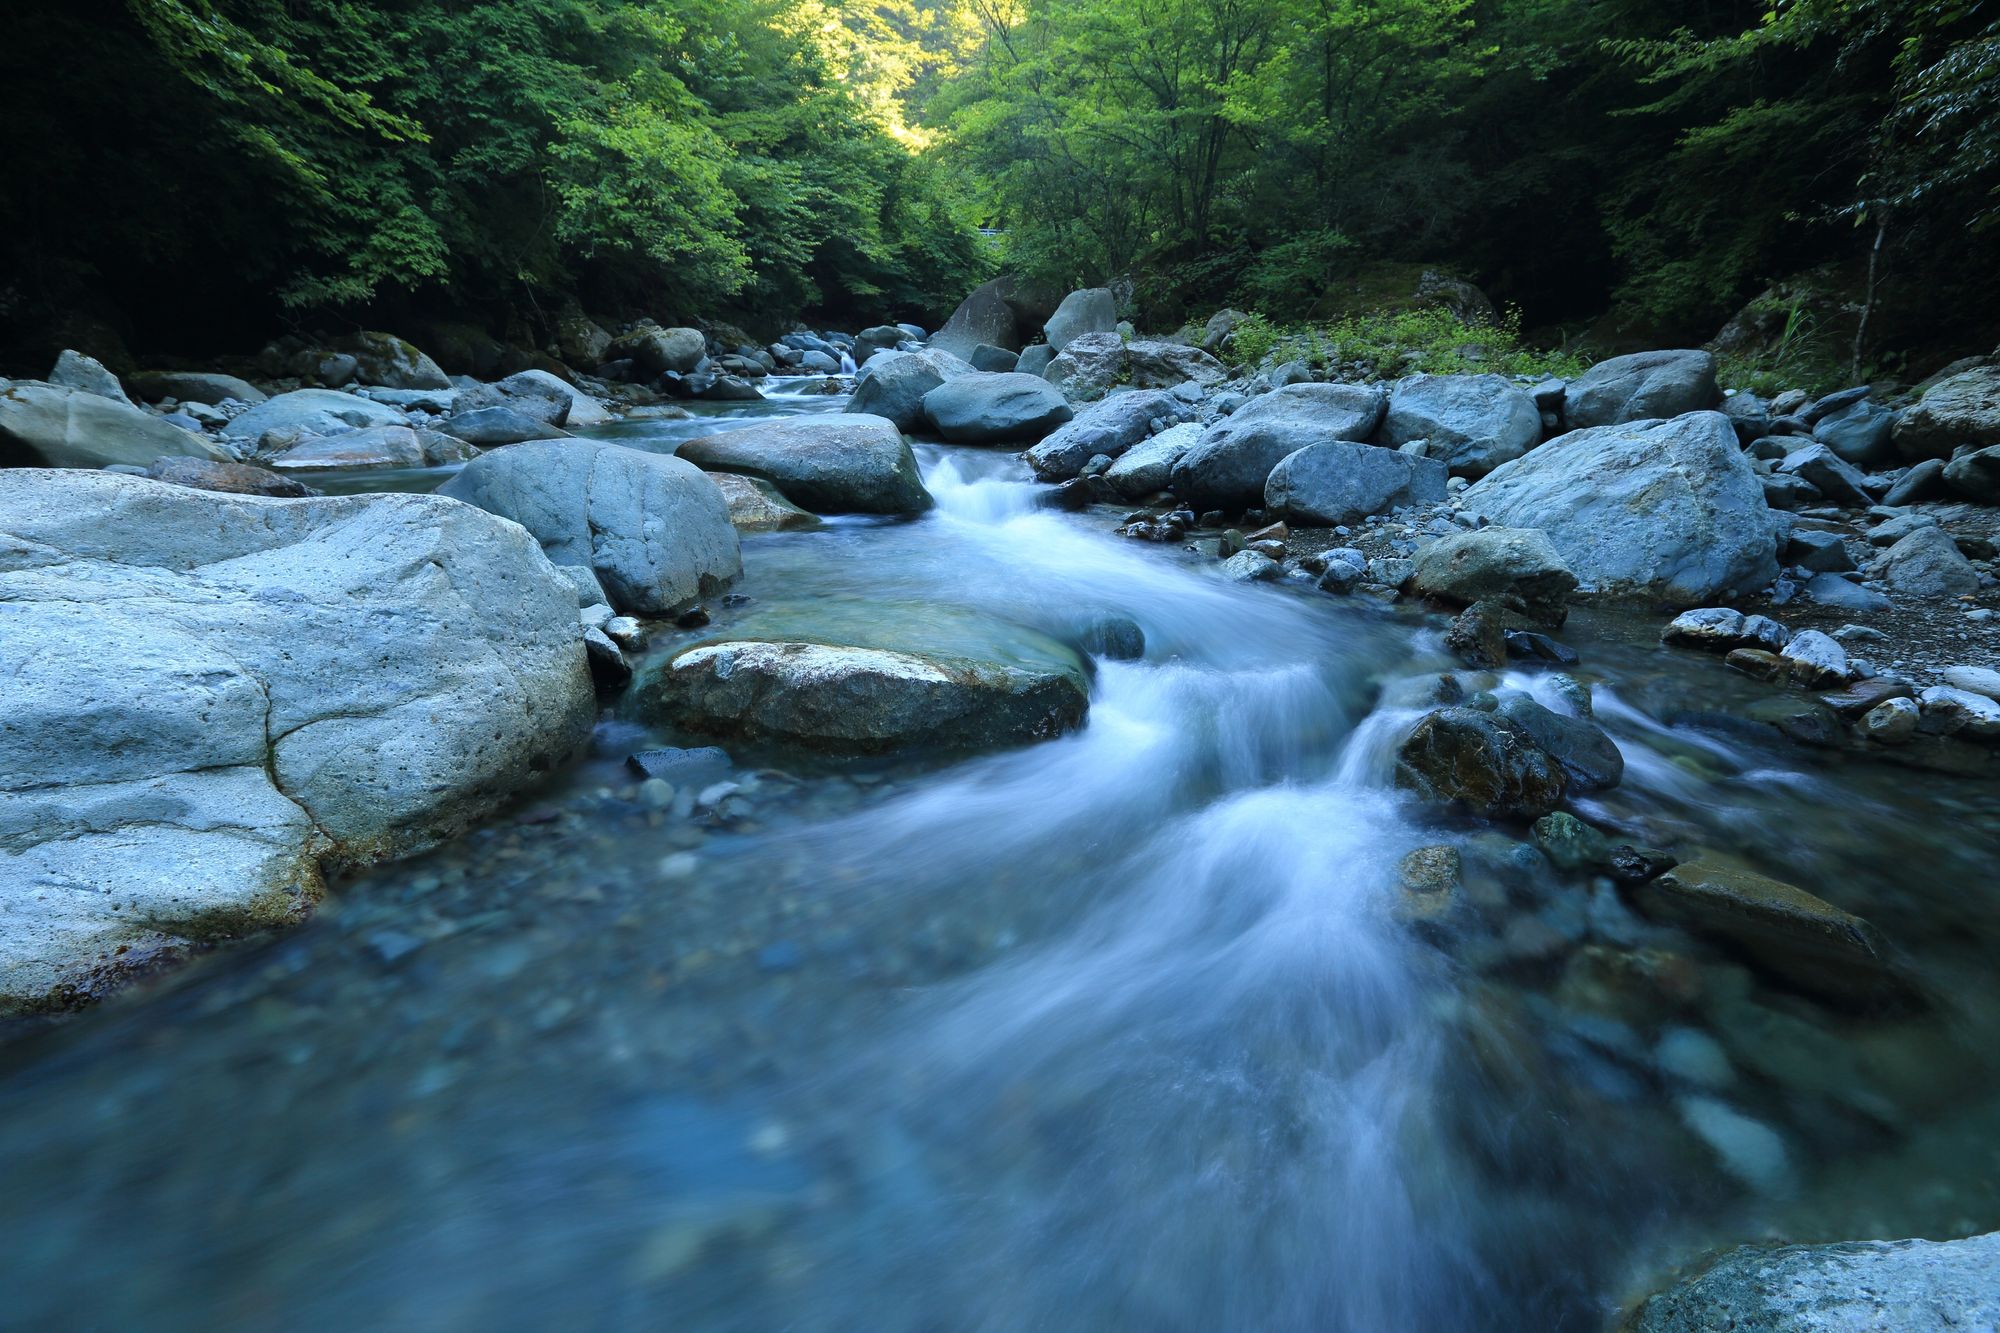 Water flowing between rocks in a stream